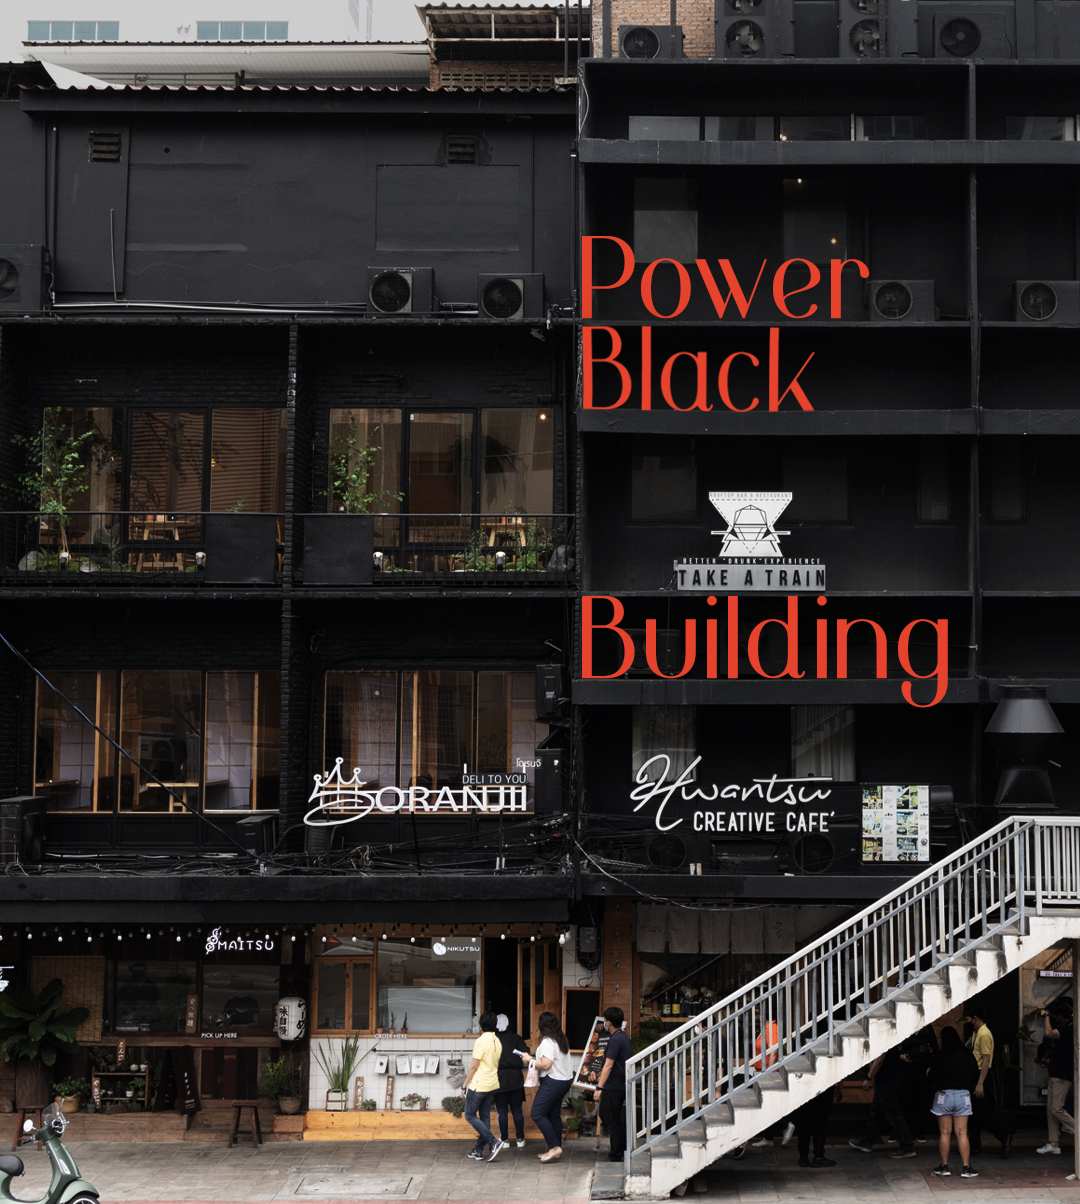 Power Black Building อาคารพาณิชย์ที่ใช้ทุกตารางนิ้วสร้างรายได้